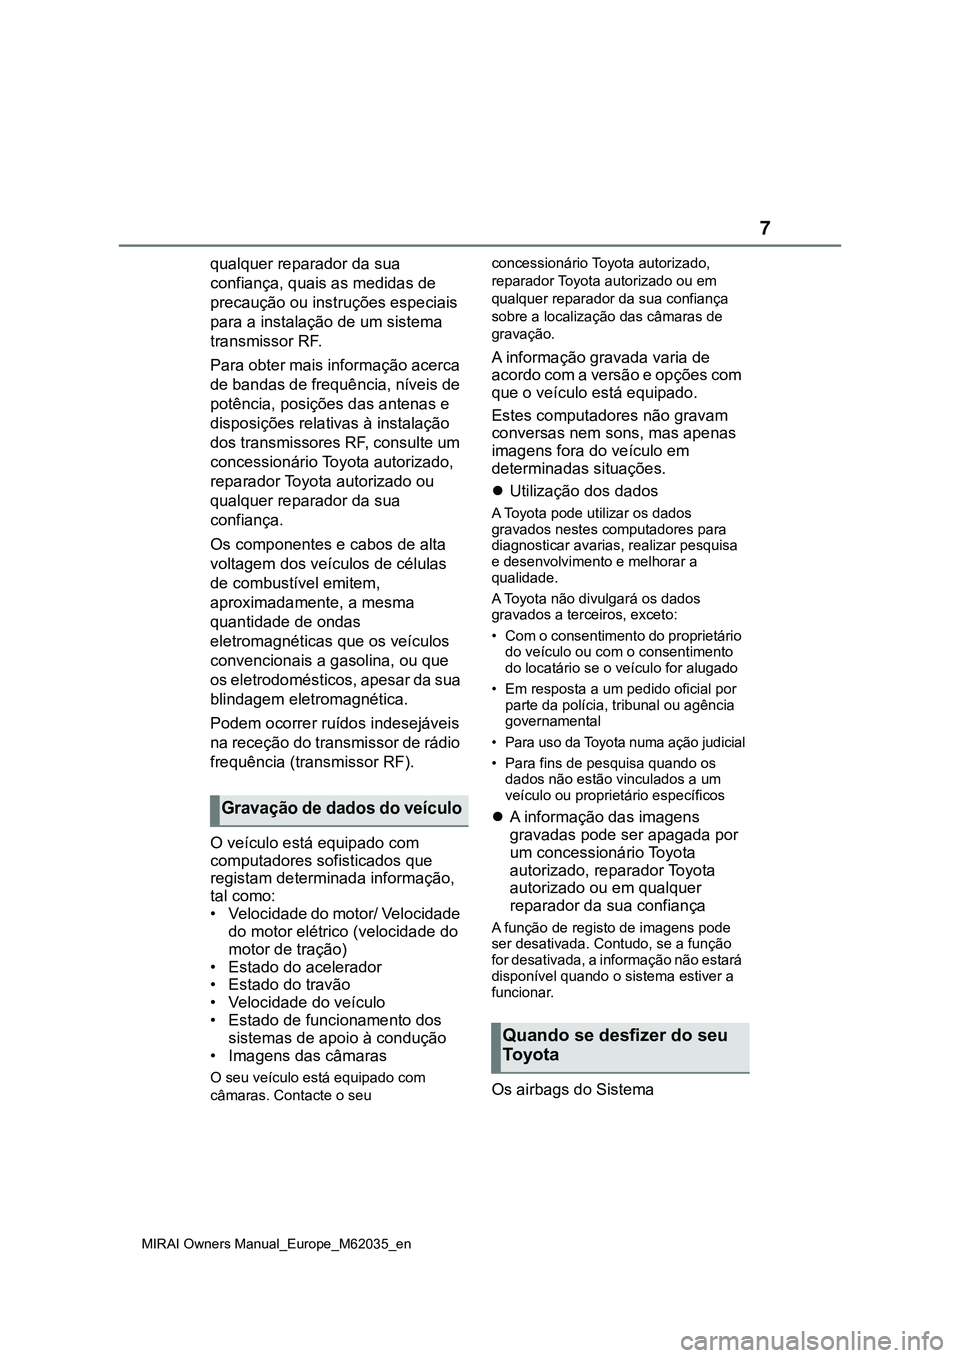 TOYOTA MIRAI 2021  Manual de utilização (in Portuguese) 7
MIRAI Owners Manual_Europe_M62035_en
qualquer reparador da sua 
confiança, quais as medidas de 
precaução ou instruções especiais 
para a instalação de um sistema 
transmissor RF.
Para obter 